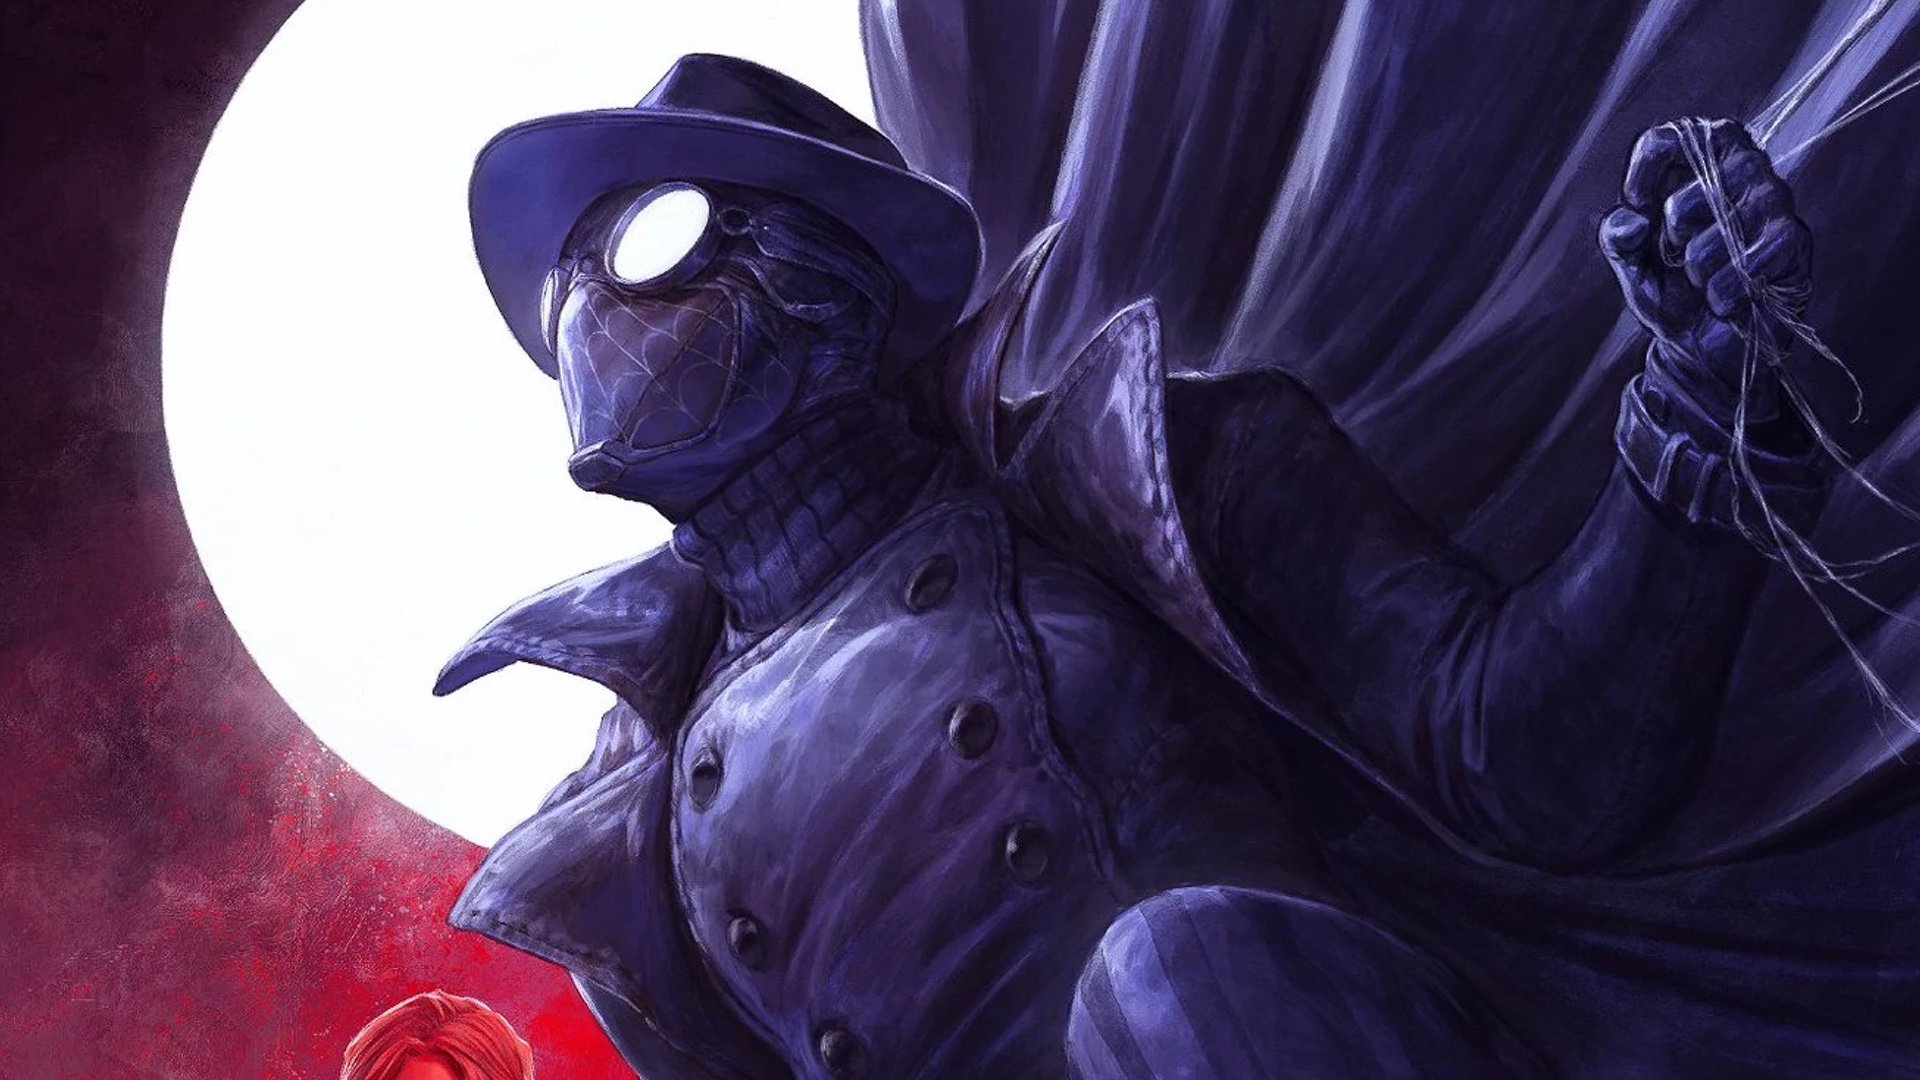 Spider-Man Noir Series Taps ‘The Punisher’s’ Steve Lightfoot as Co-Showrunner